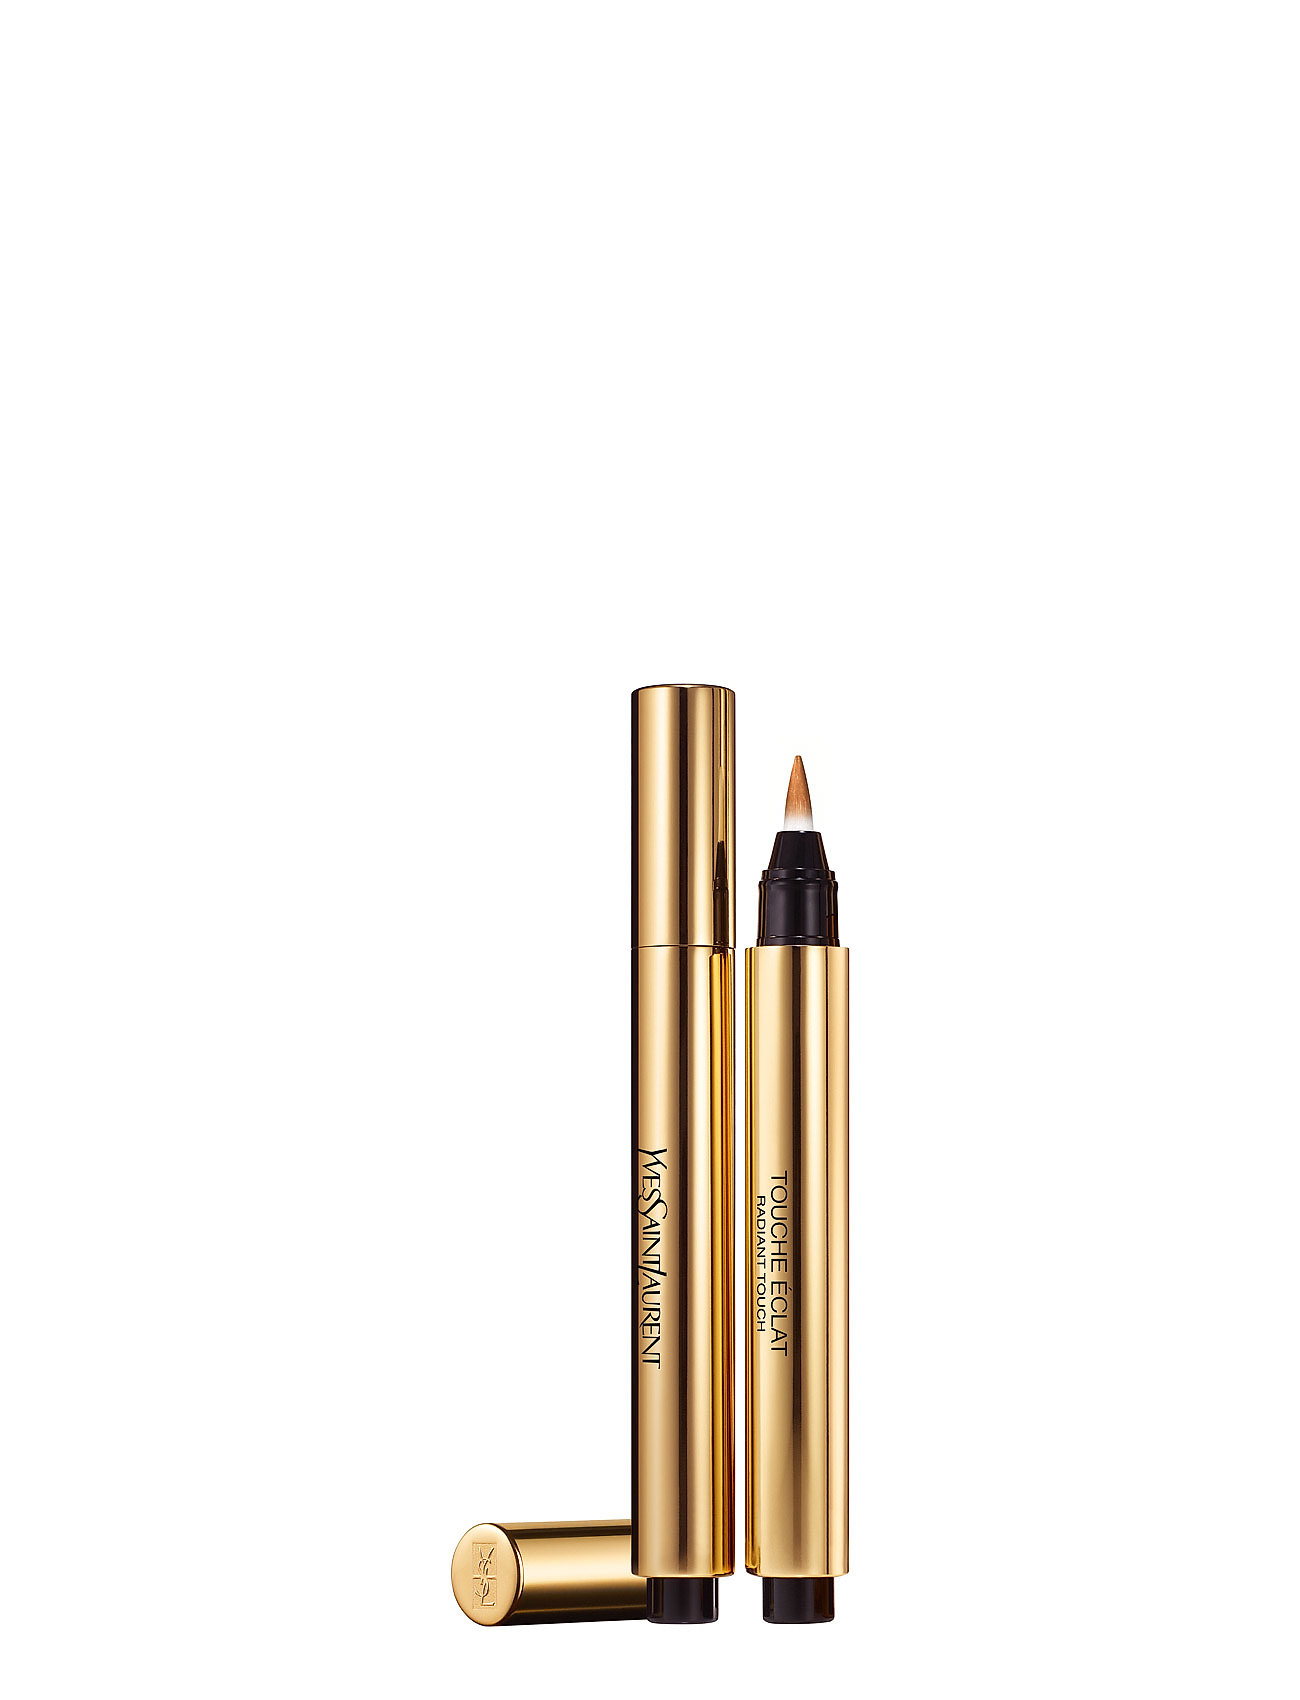 Touche Éclat Illuminating Pen Concealer Makeup Yves Saint Laurent